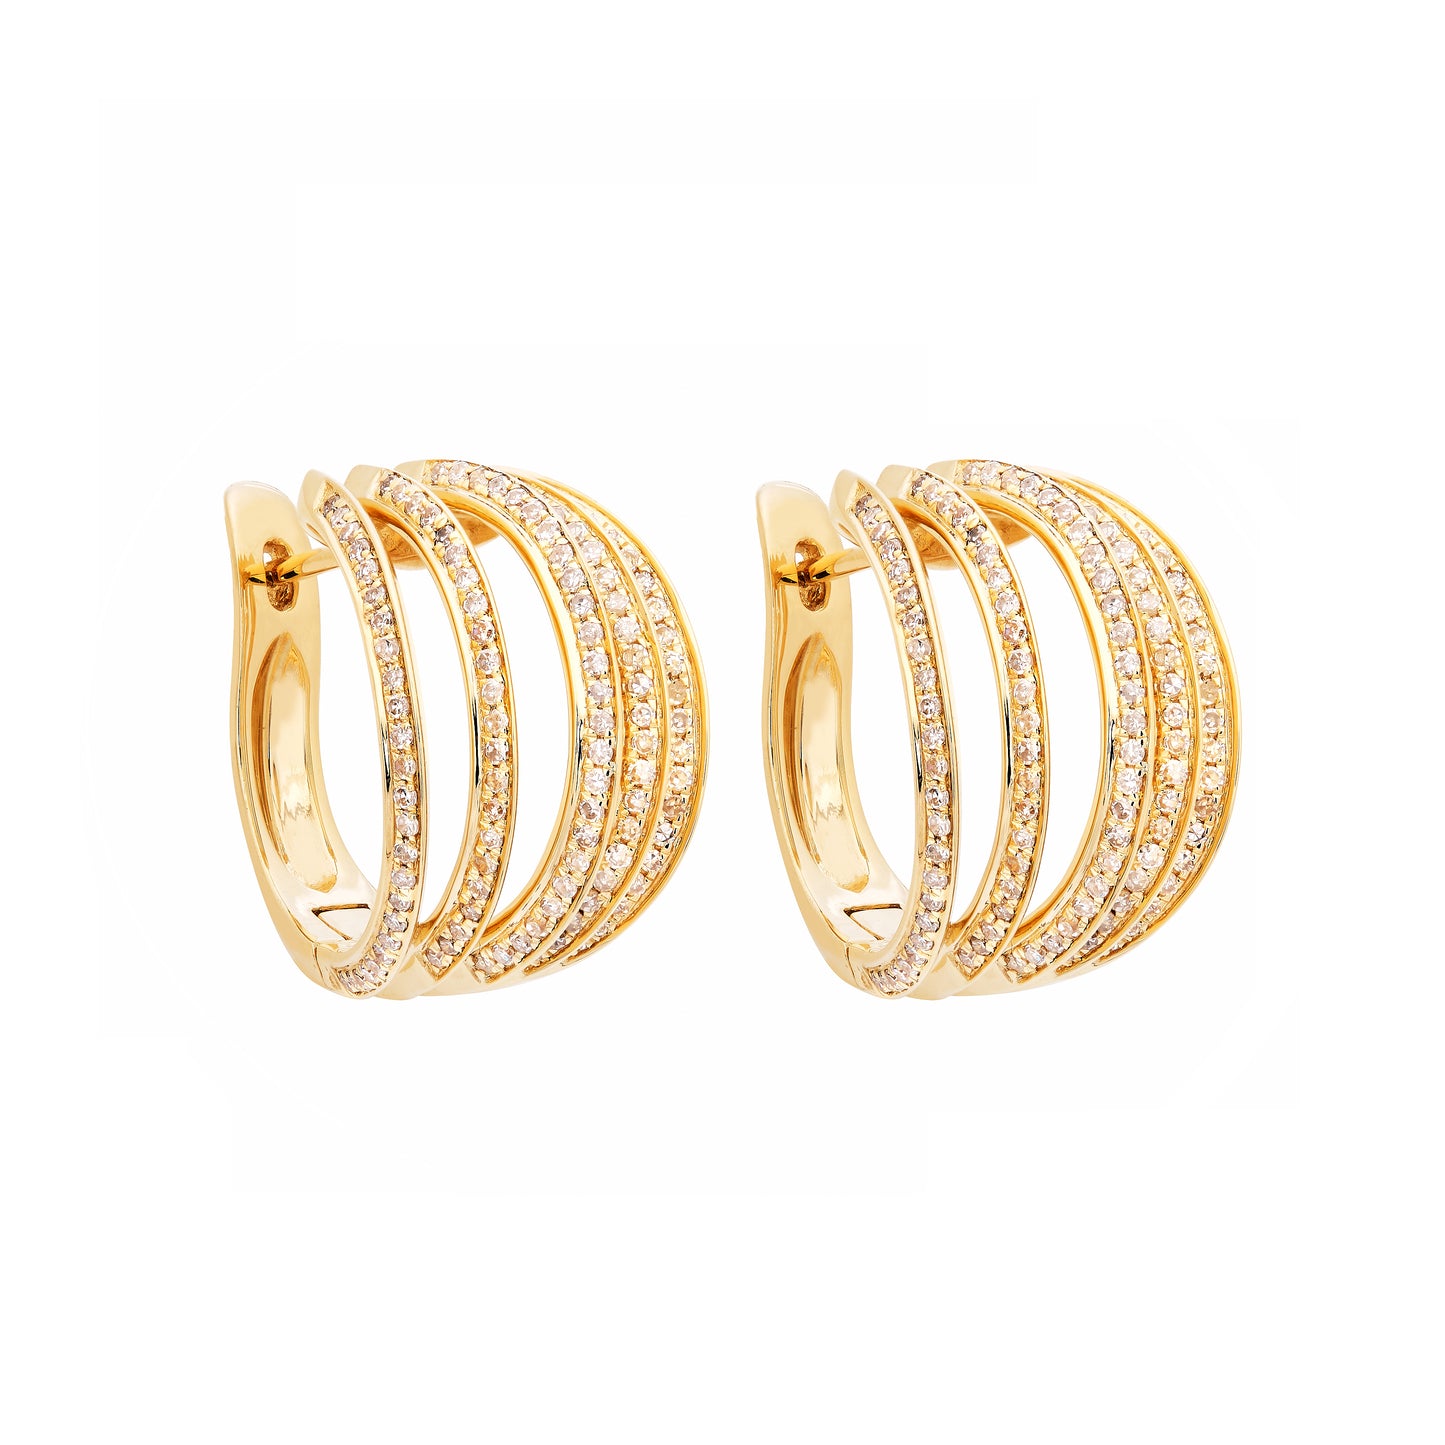 The Aerate Diamond Earrings